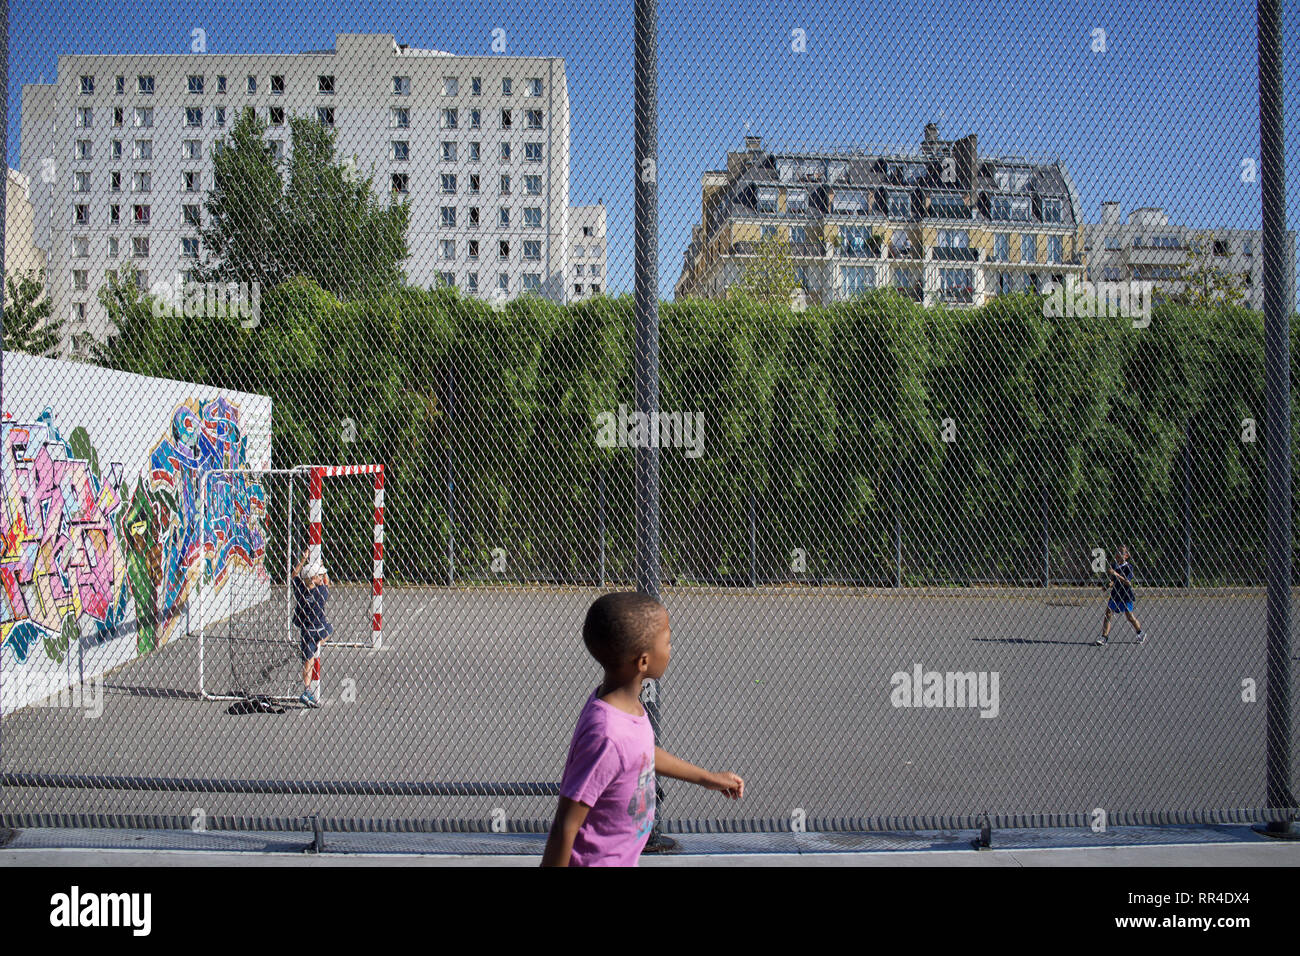 Los niños juegan en el campo de fútbol vallado, Jardins d'Eole, Rue du Département, 75018, Paris, Francia Foto de stock